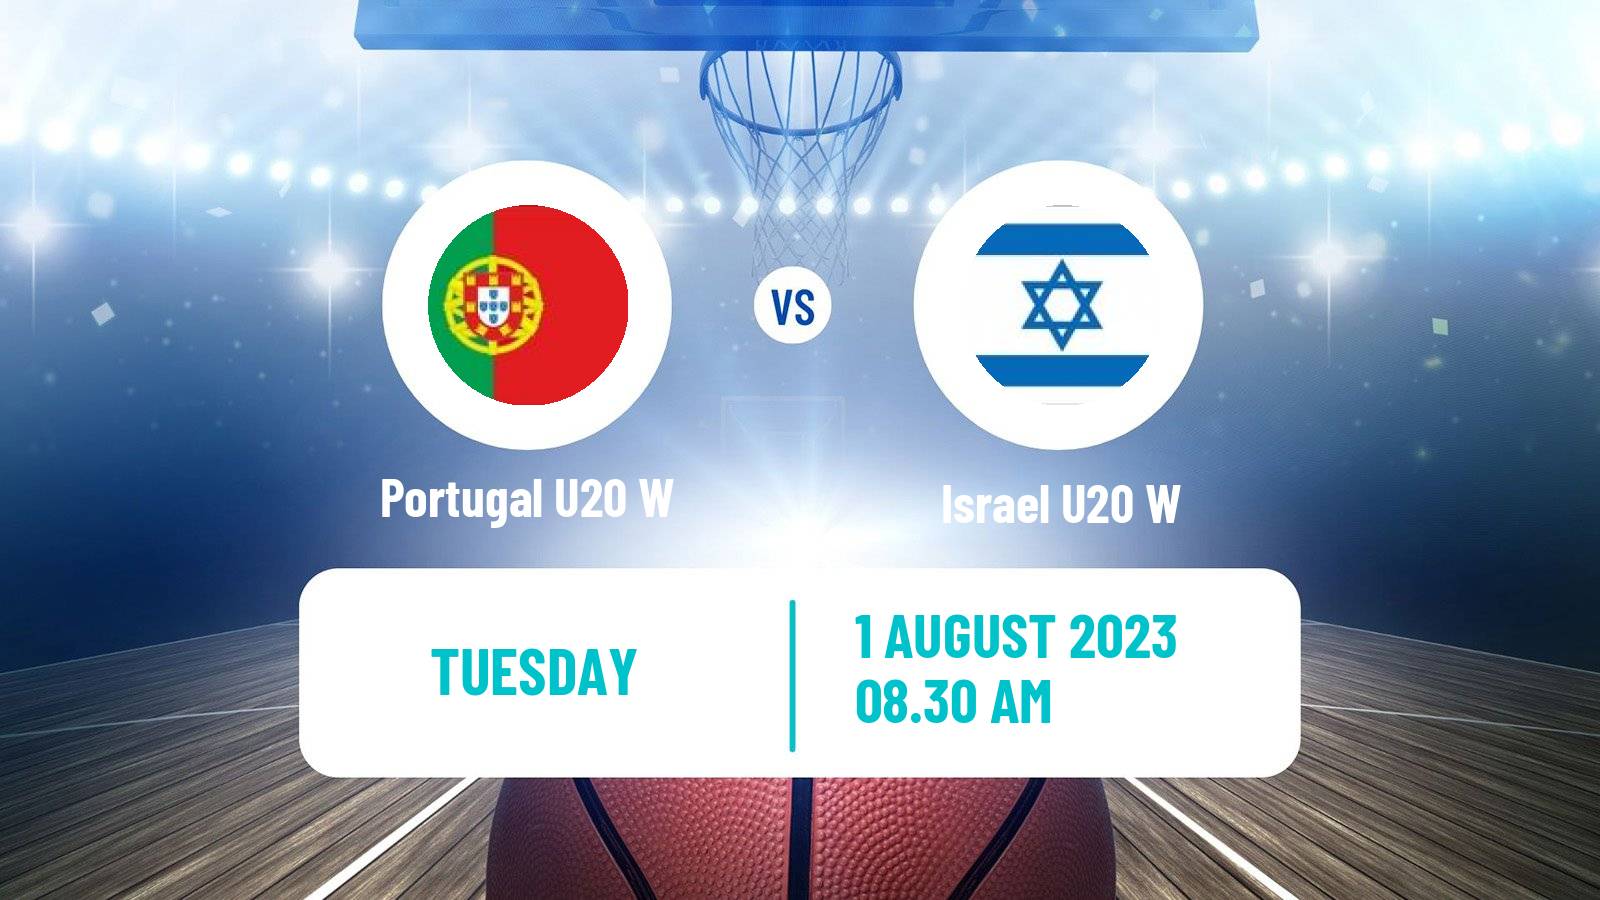 Basketball European Championship U20 Basketball Women Portugal U20 W - Israel U20 W